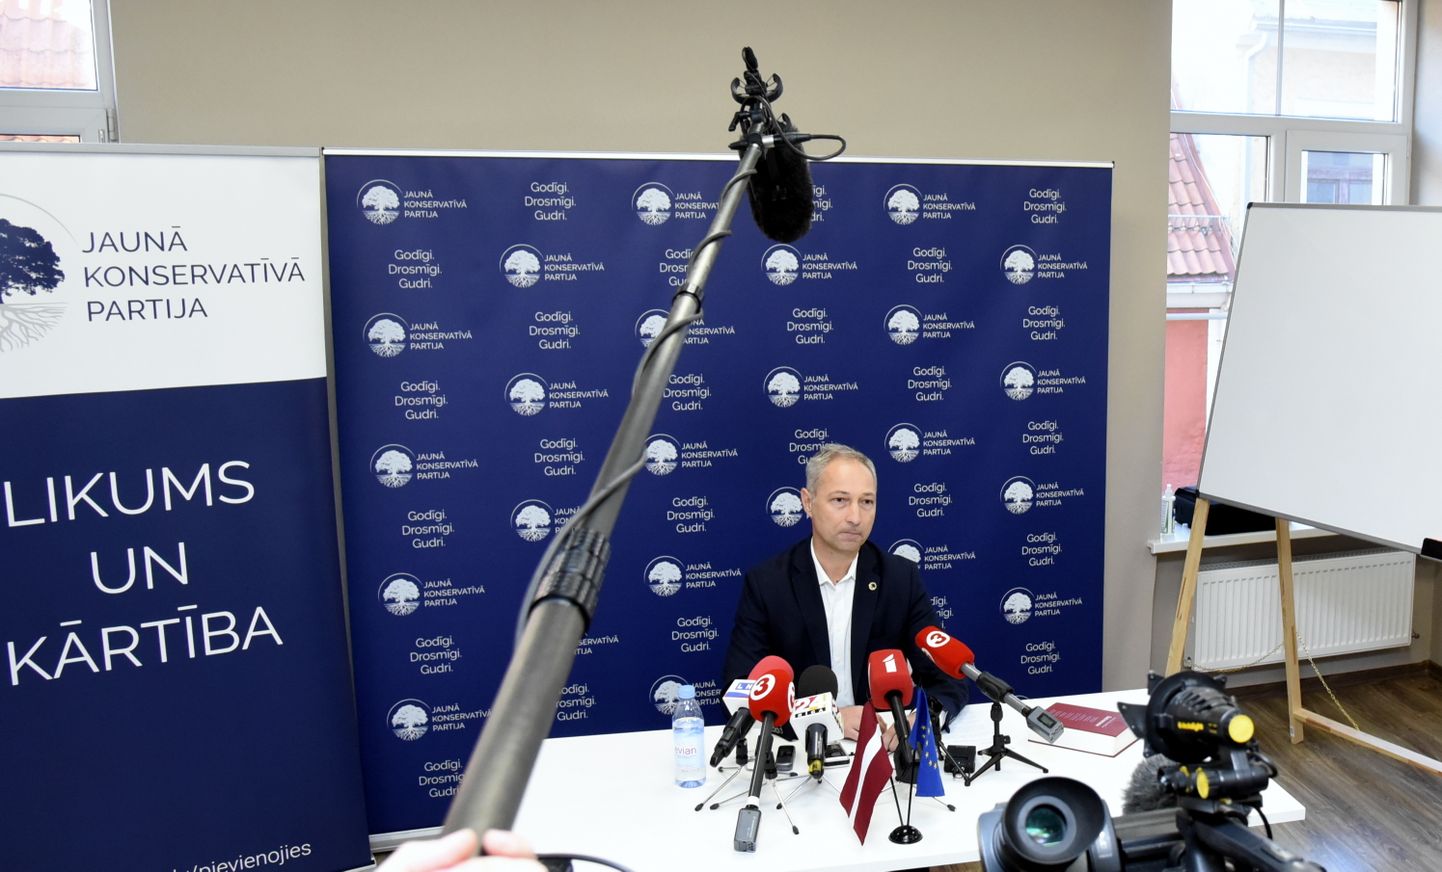 Jaunās konservatīvās partijas valdes priekšsēdētājs, premjera amata kandidāts Jānis Bordāns preses konferencē informē par valdības veidošanas gaitu.